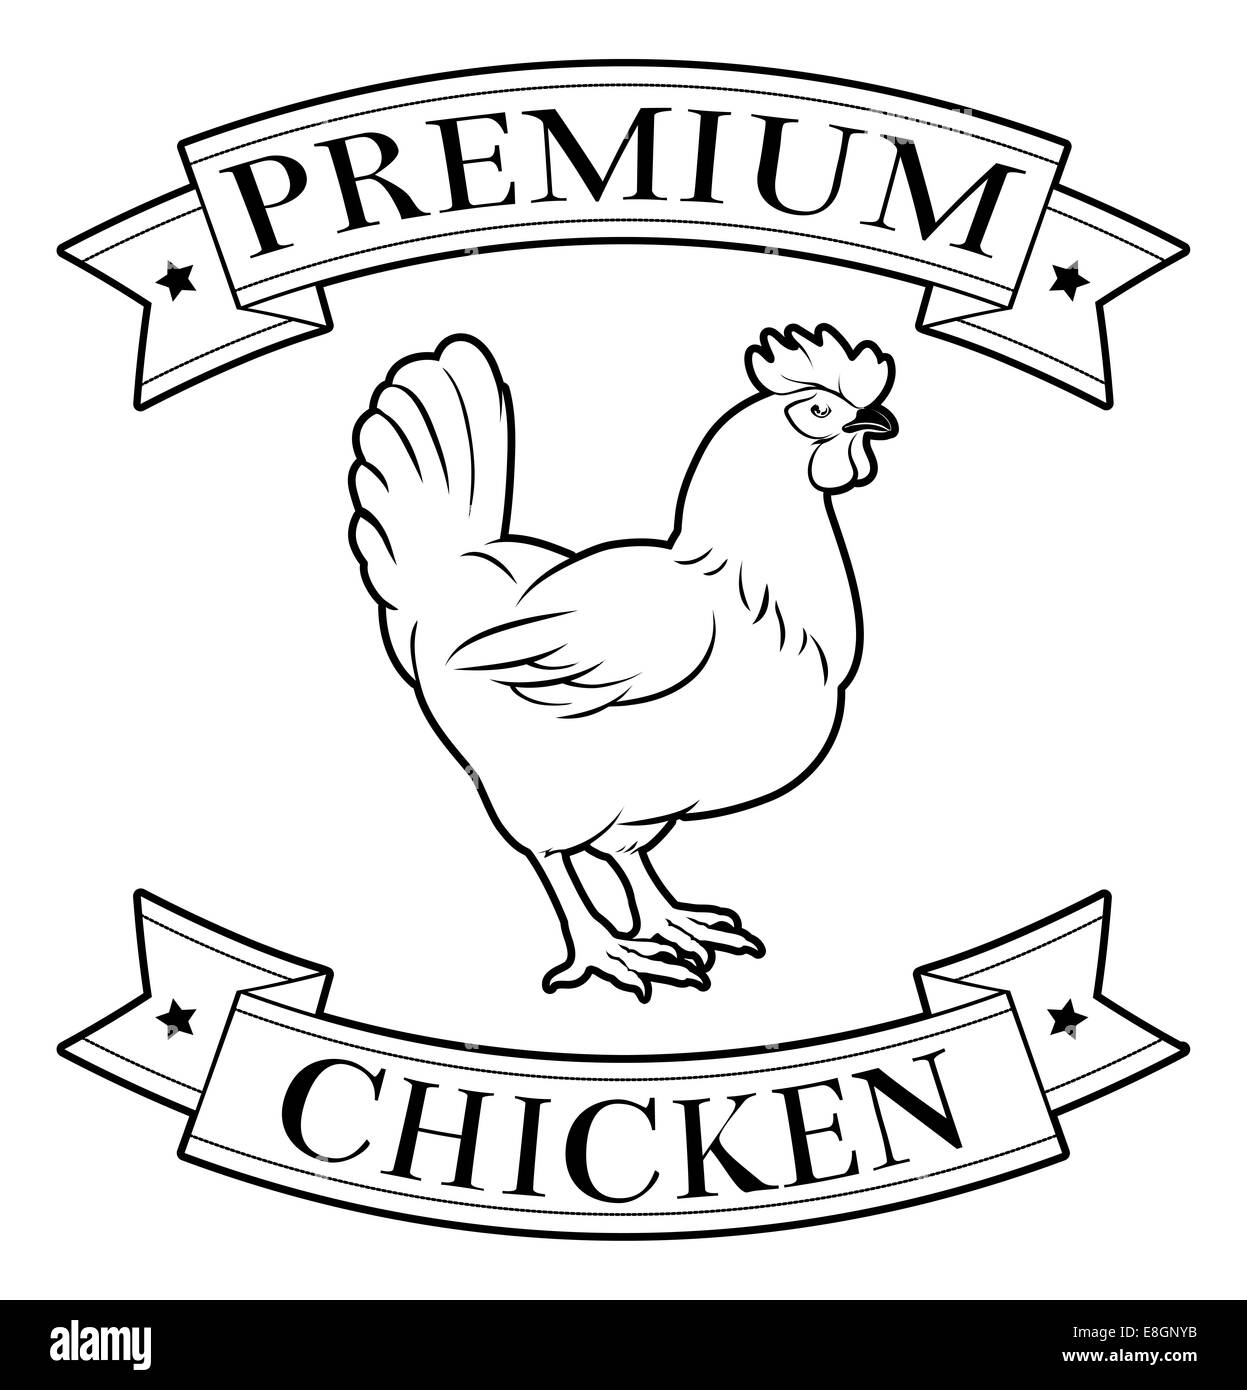 Pollo Premium etichetta alimentare con una illustrazione di un pollo Foto Stock